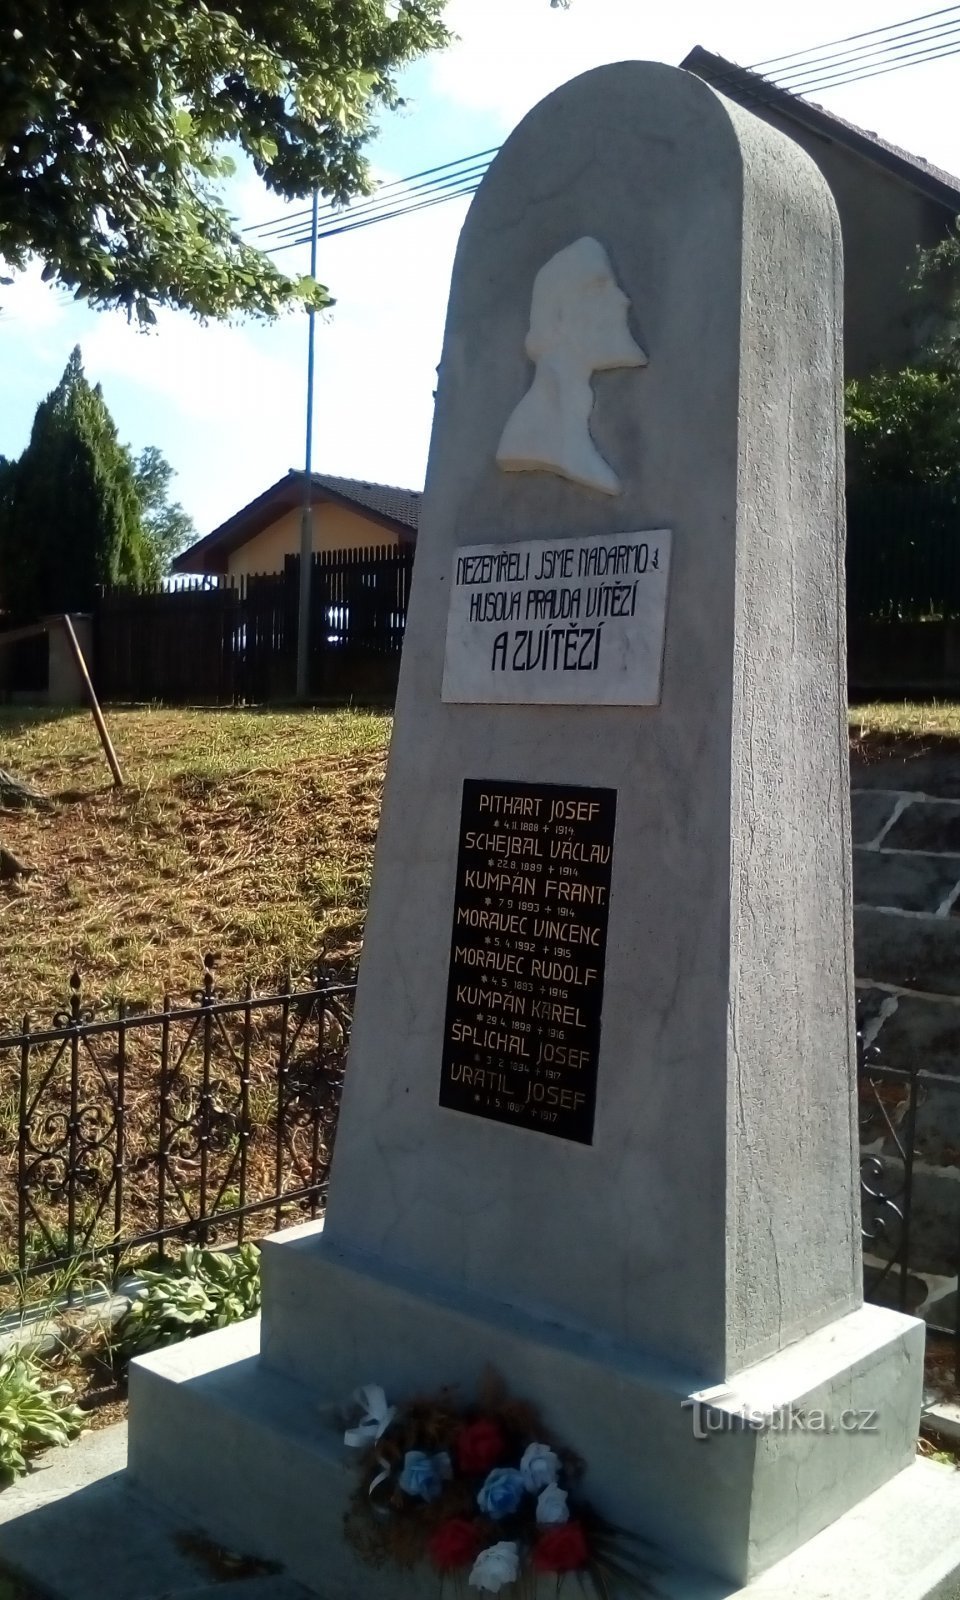 第一次世界大战受害者纪念碑在 Drozdice (Pardubice)